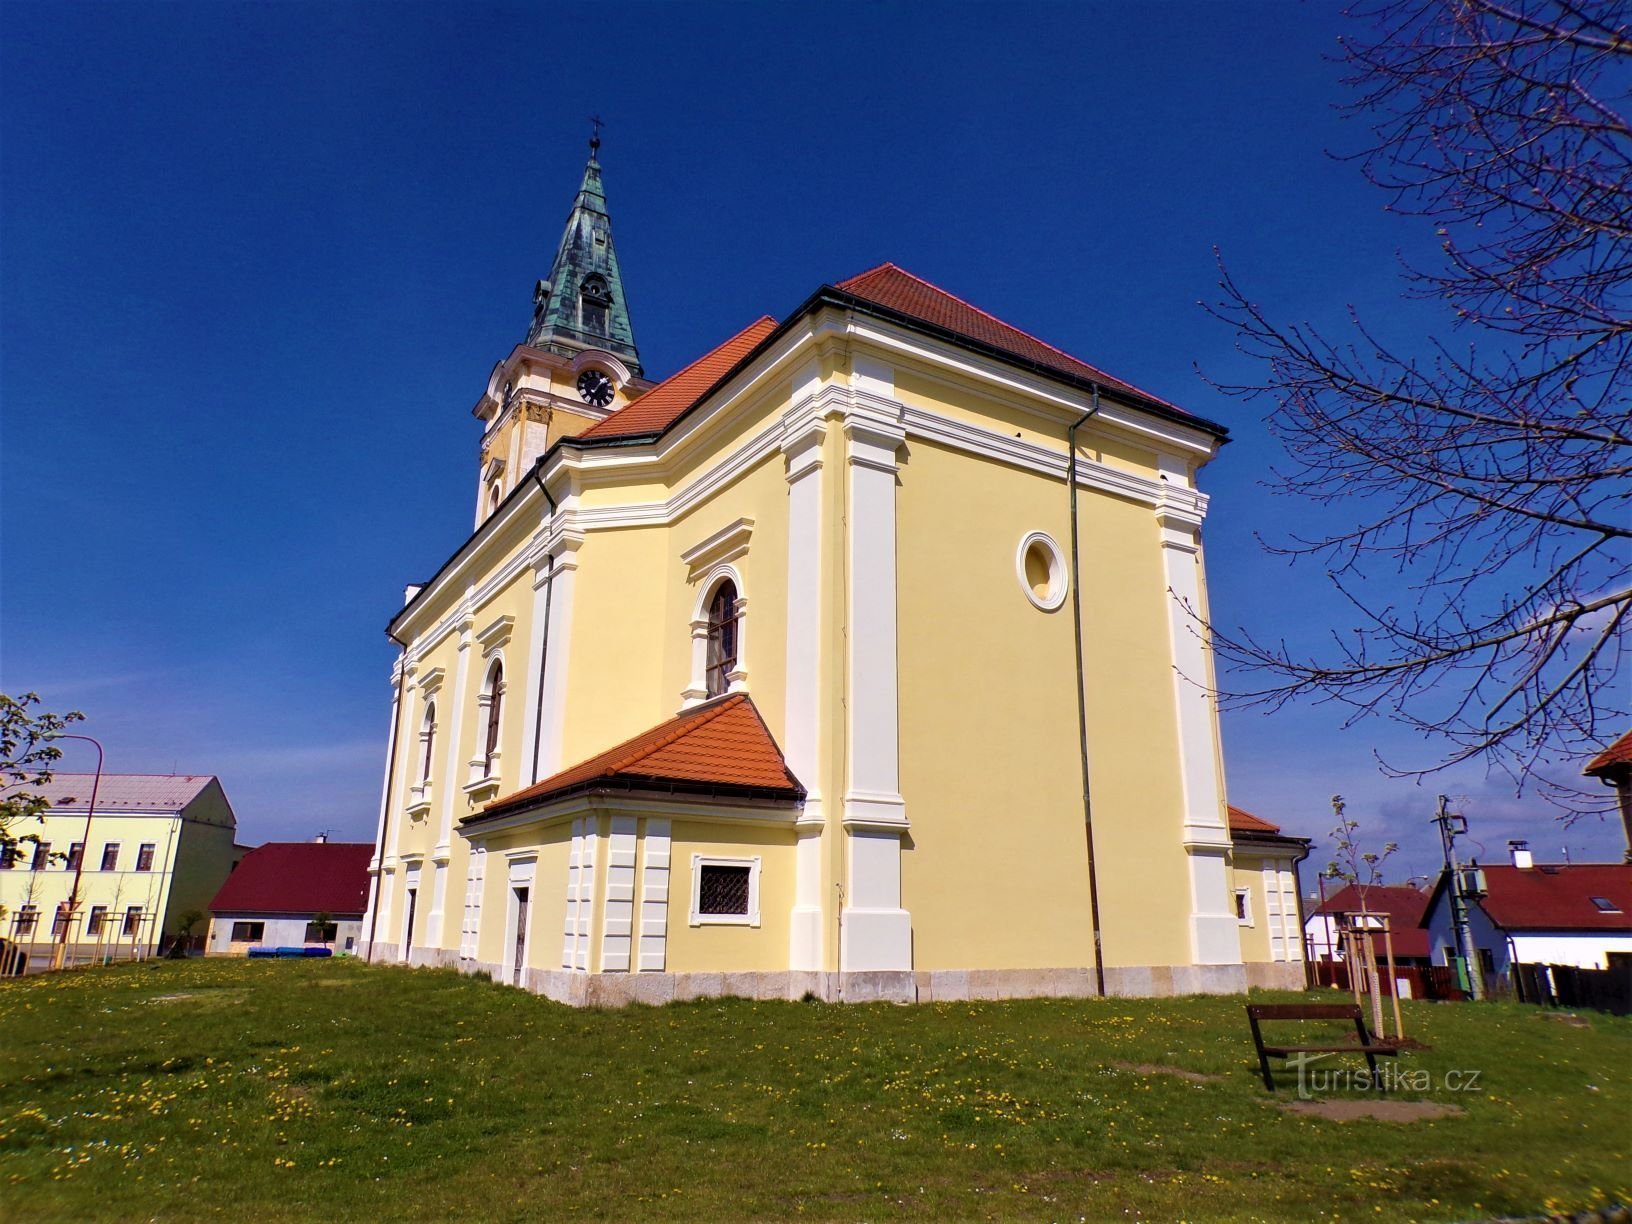 kirken St. Stanislav, biskop og martyr (Smidary, 30.4.2021/XNUMX/XNUMX)